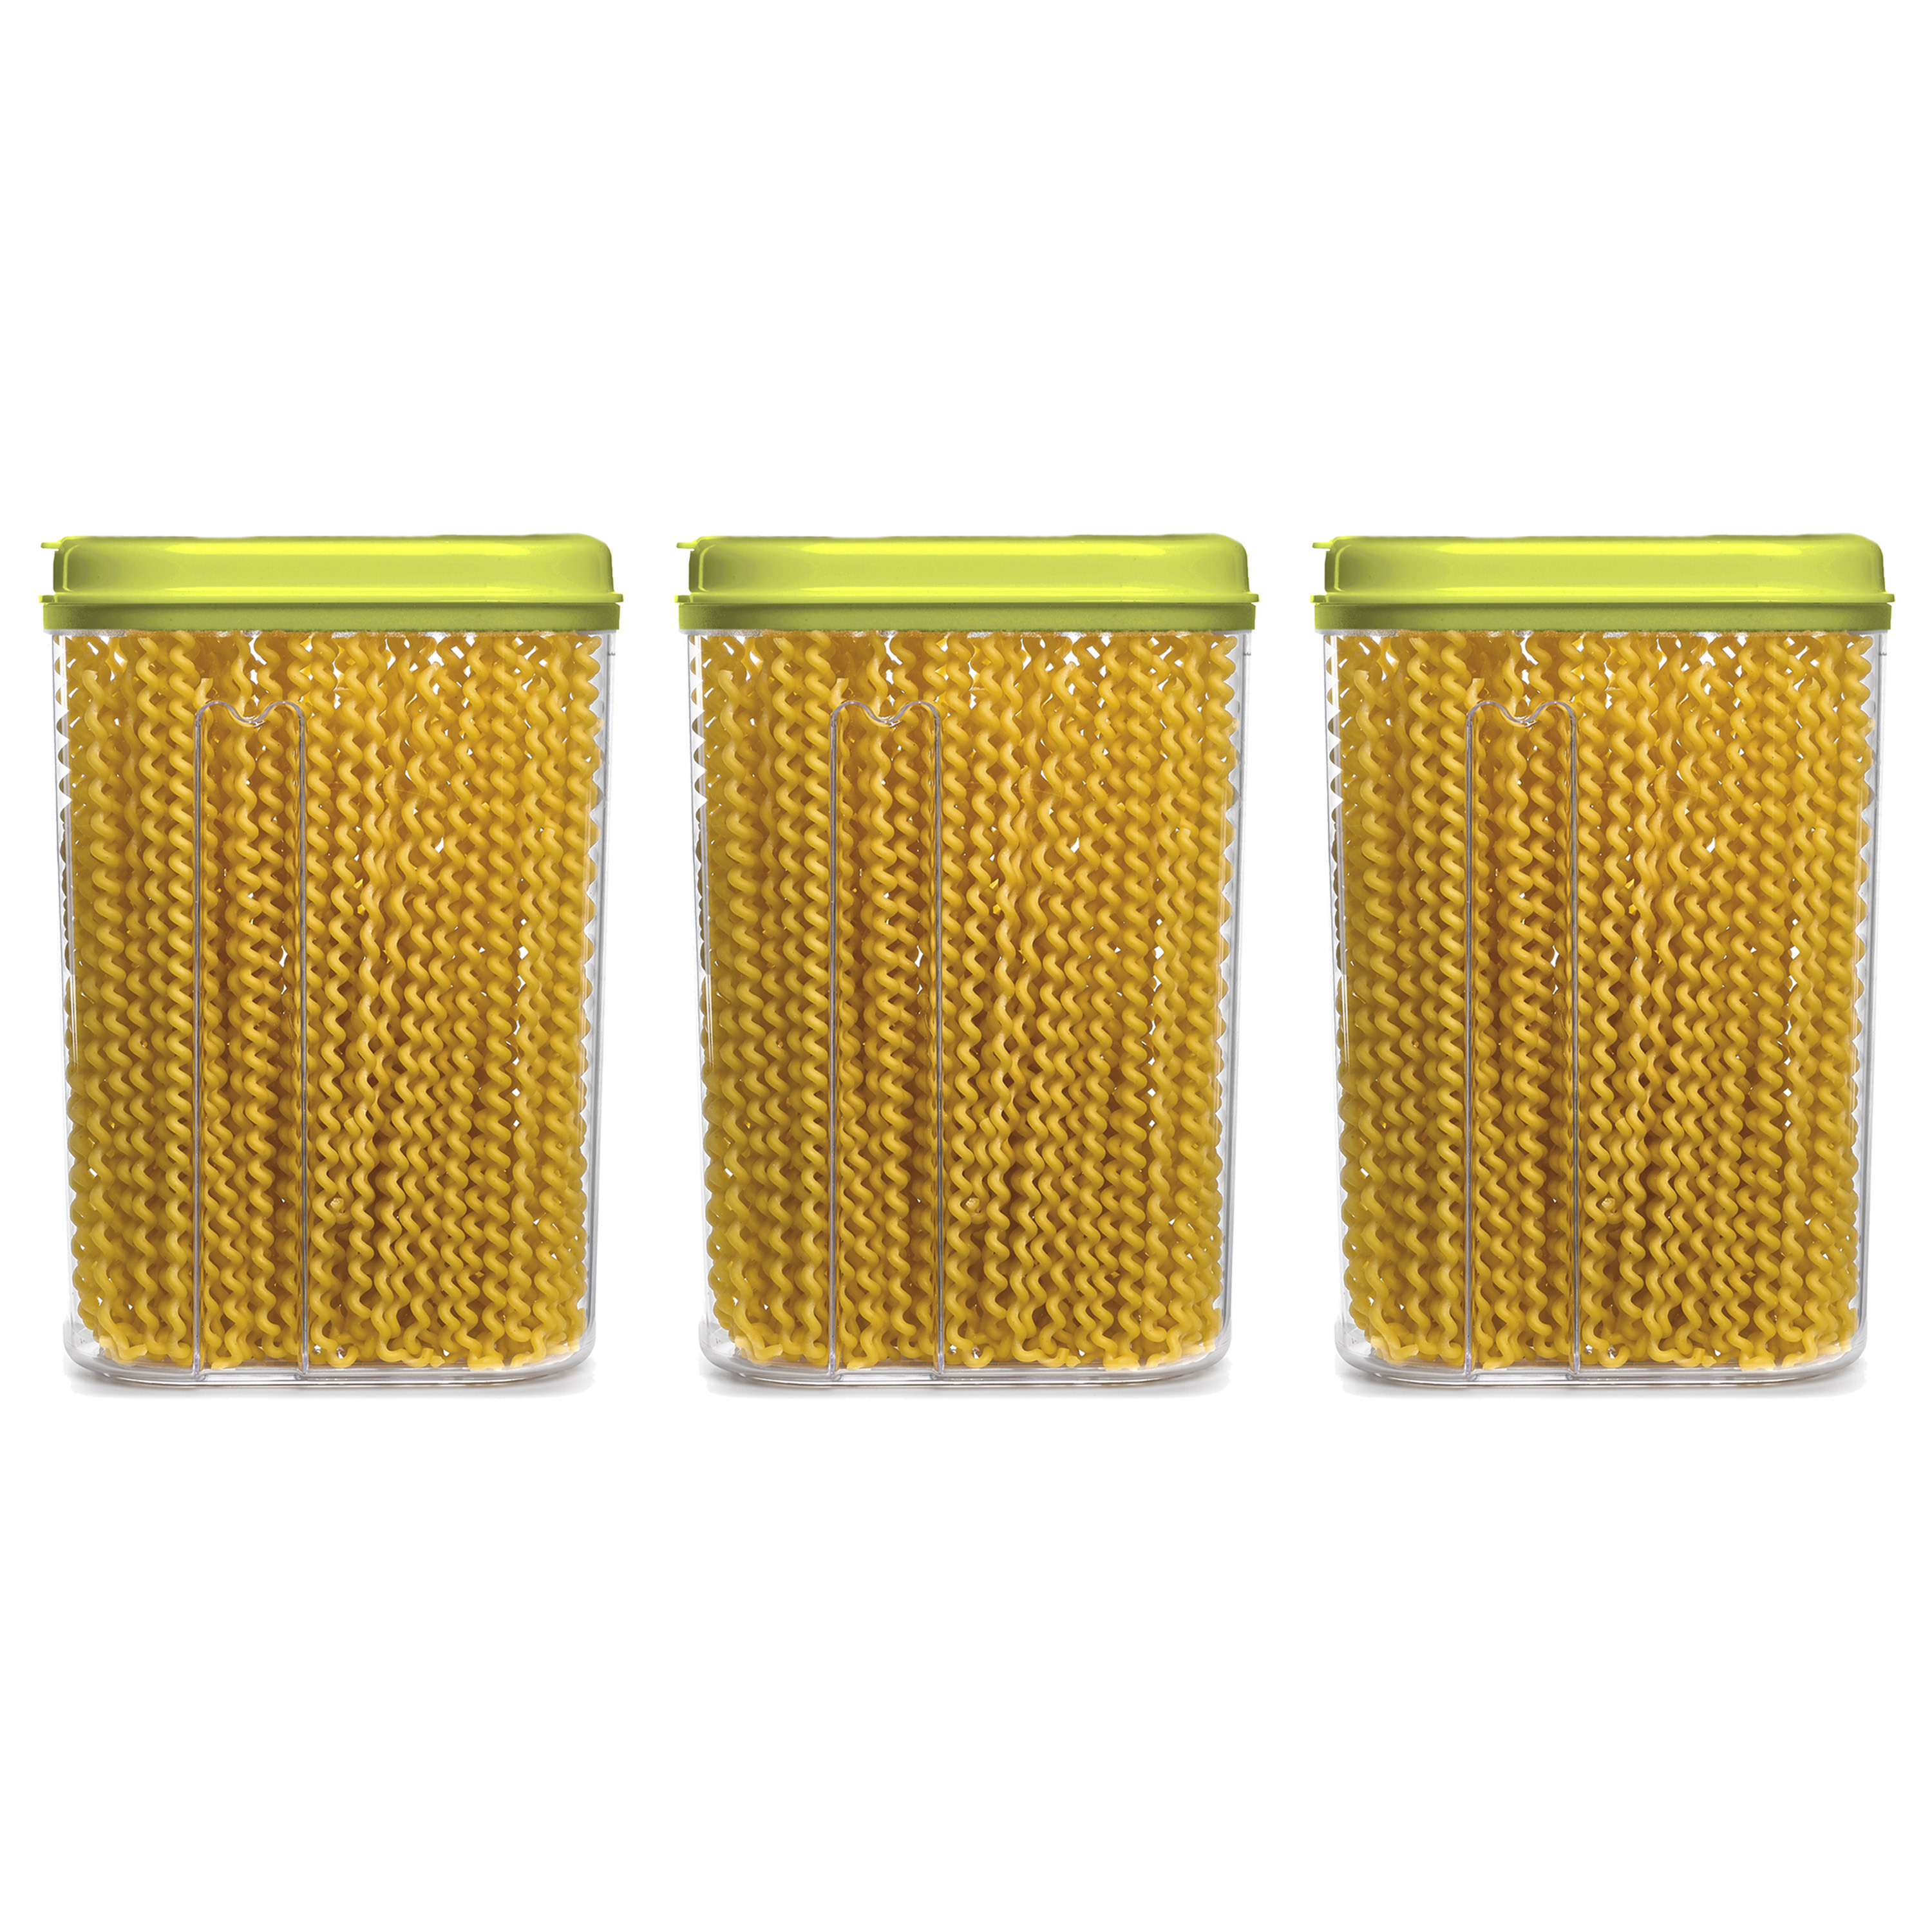 PlasticForte Voedselcontainer strooibus - 3x - groen - 1500 ml - kunststof - 15 x 8 x 23 cm - voorraadpot -